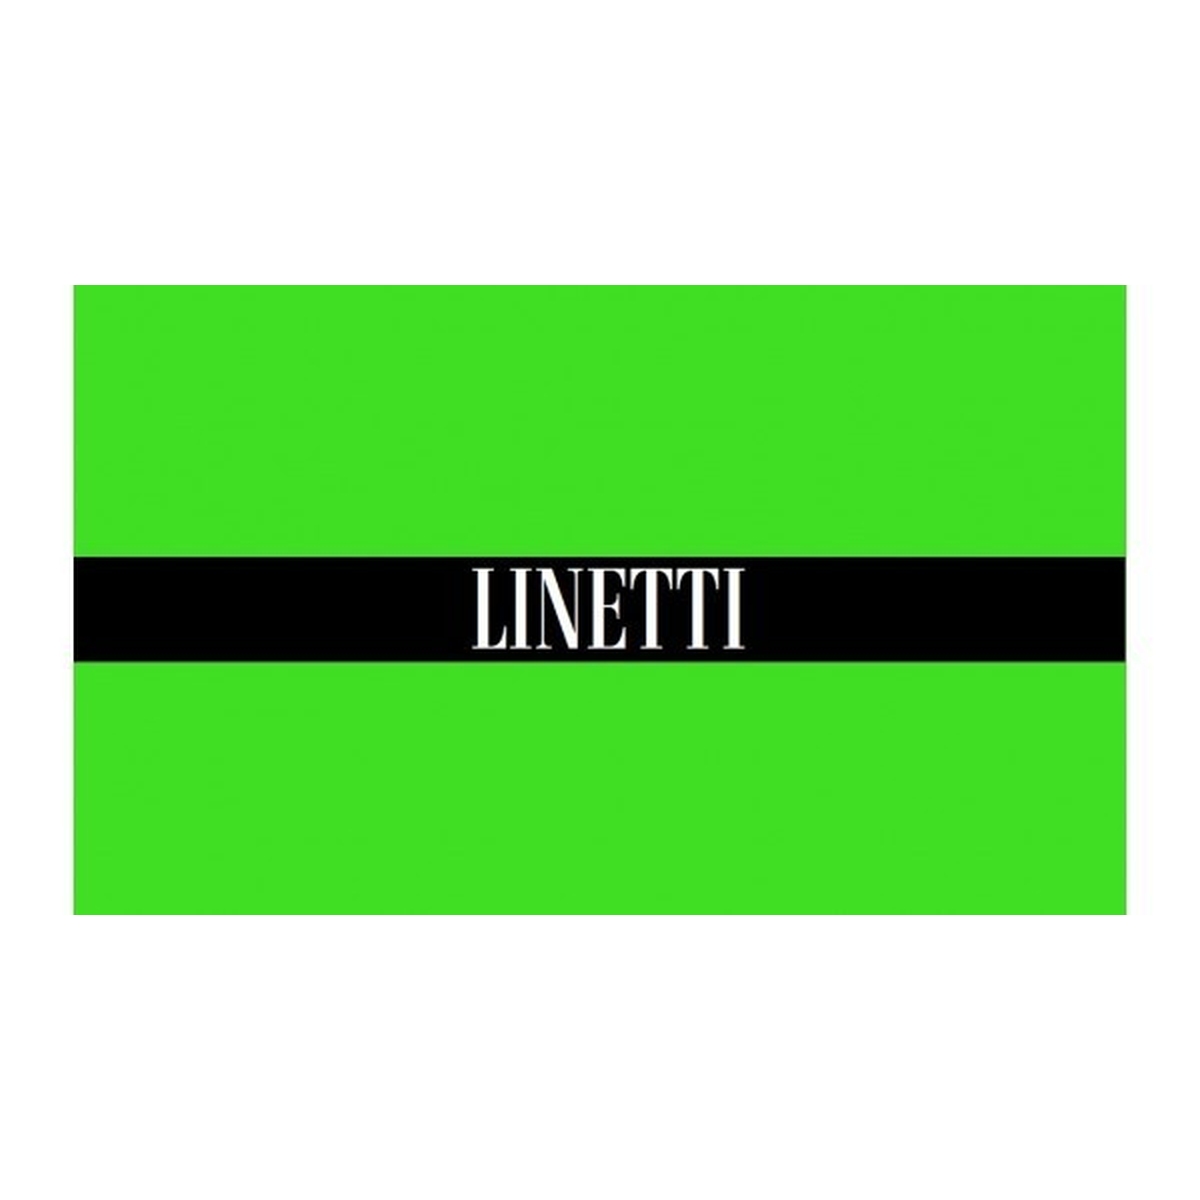 Linetti